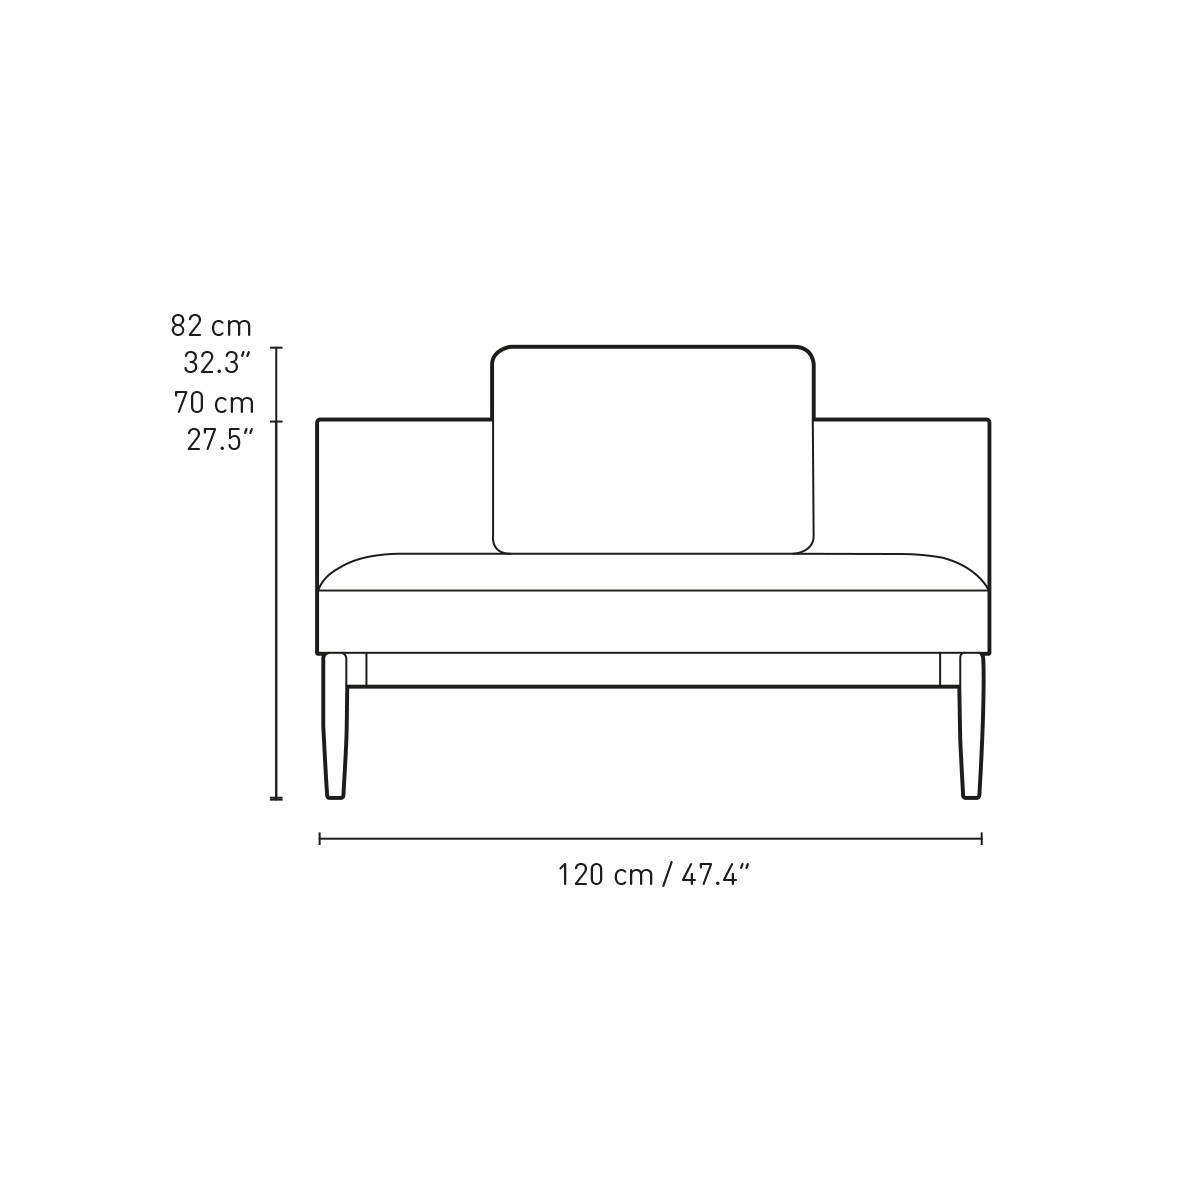 E301 - 1 cushion included - Embrace sofa